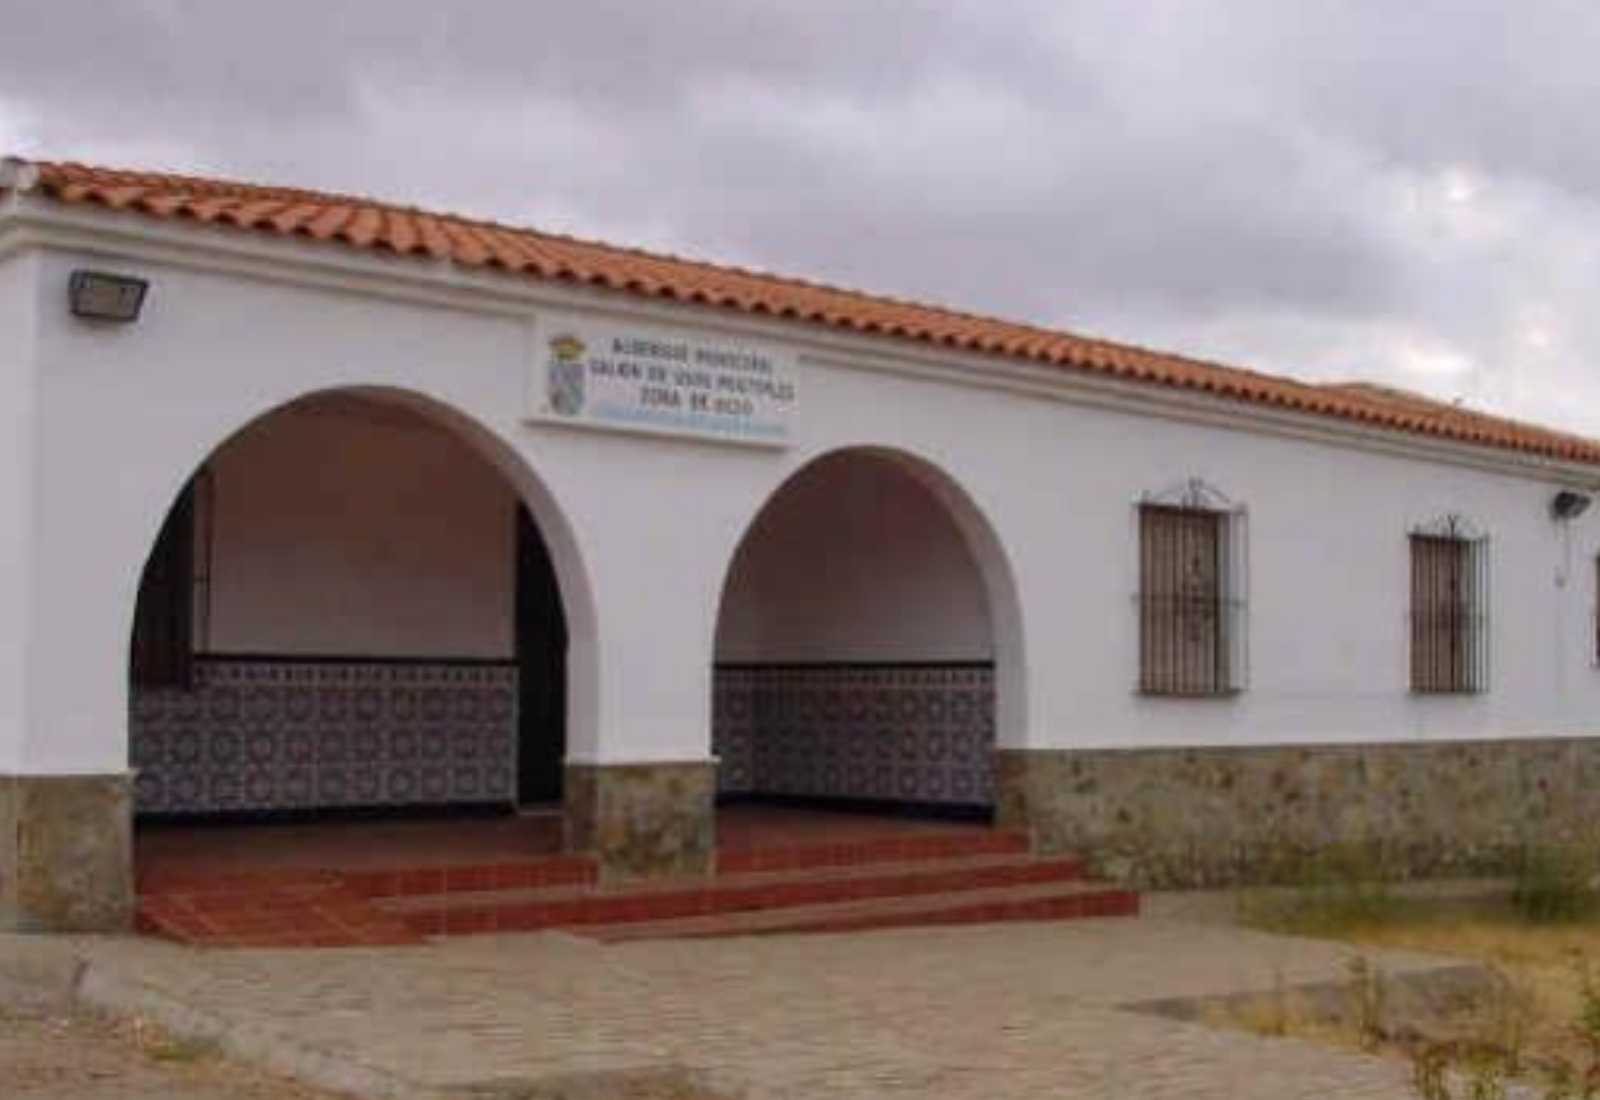 Entrada al Albergue municipal de Calzadilla de los Barros